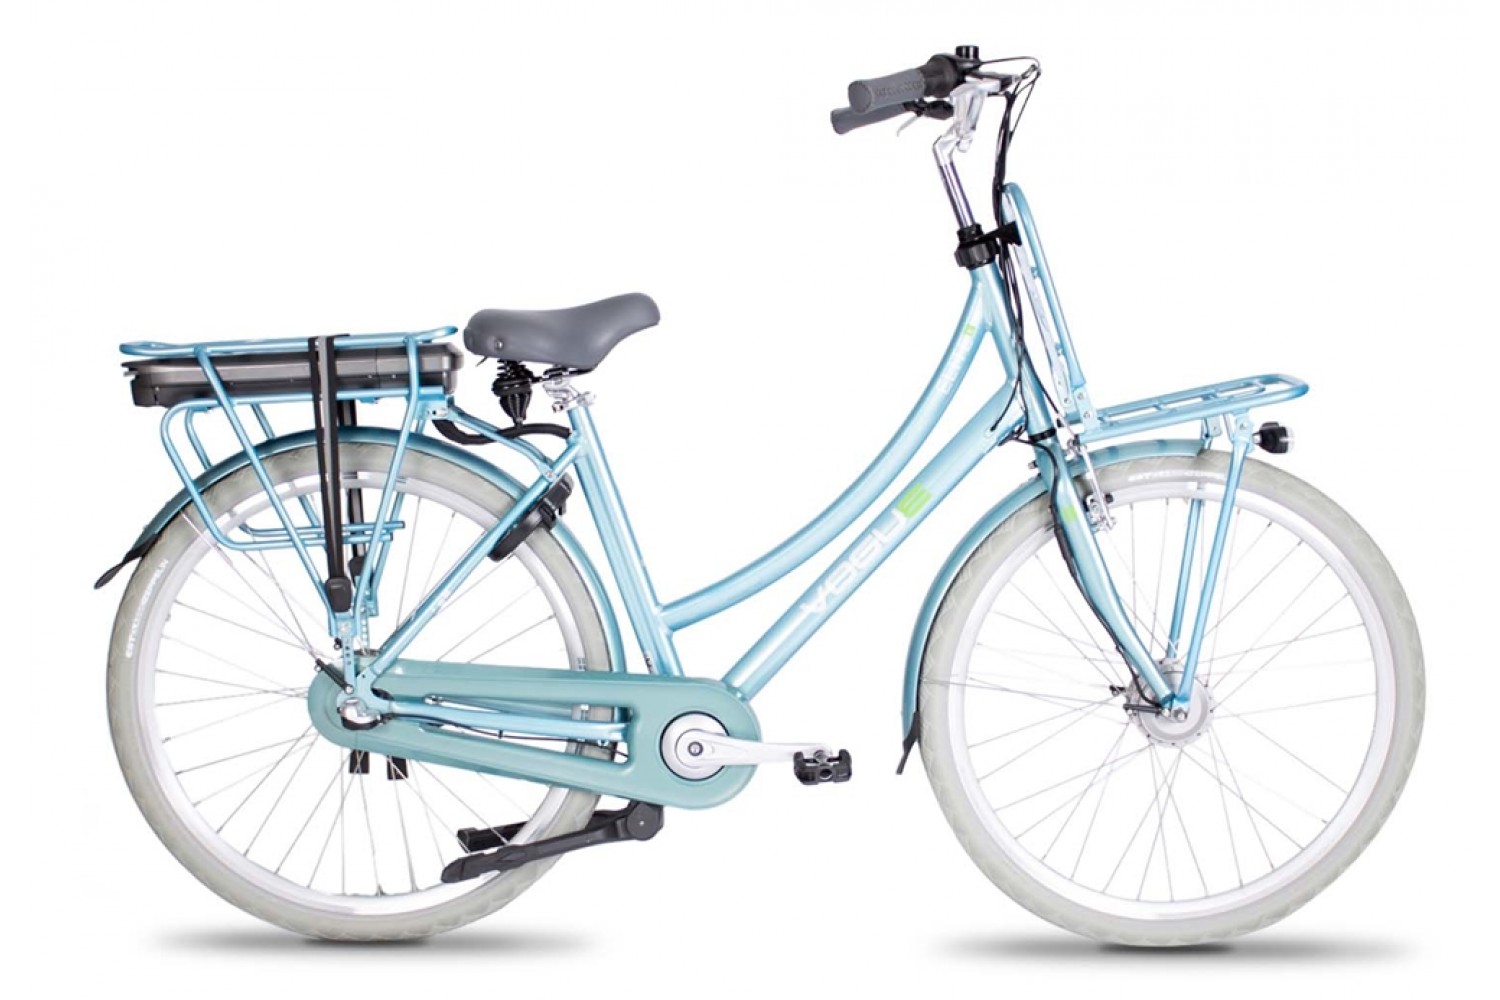 Verraad Aanpassen Oorzaak Vogue Elite Elektrische Fiets N3 Mint Blue | 899,- Euro | City-Bikes.nl